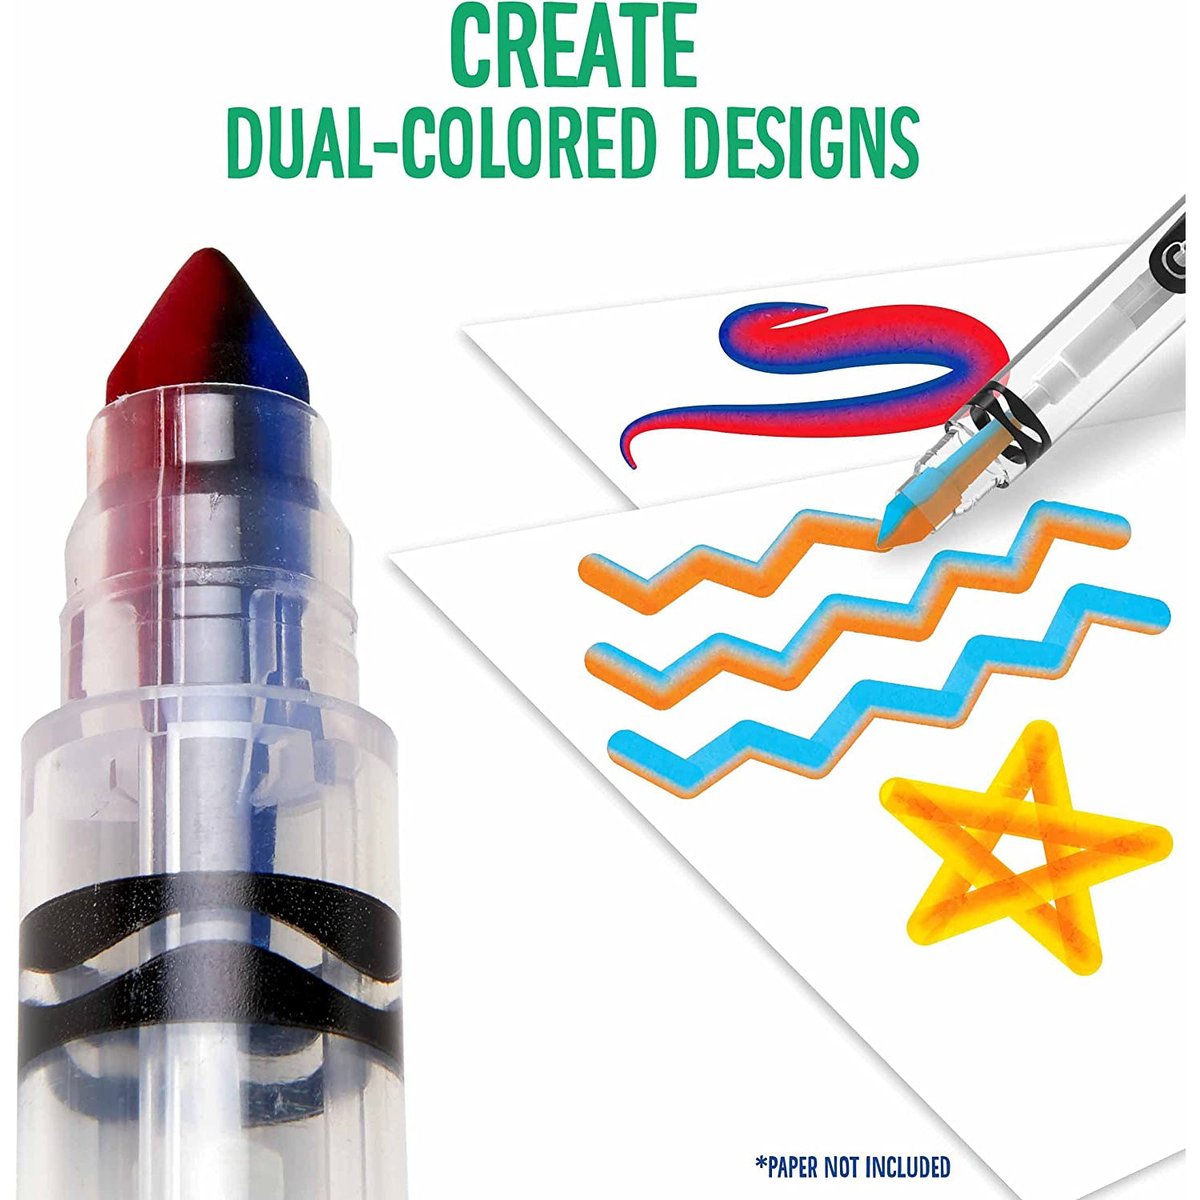 Crayola Marker Mixer Art Kit, Washable Marker Set, Easy Craft Kit